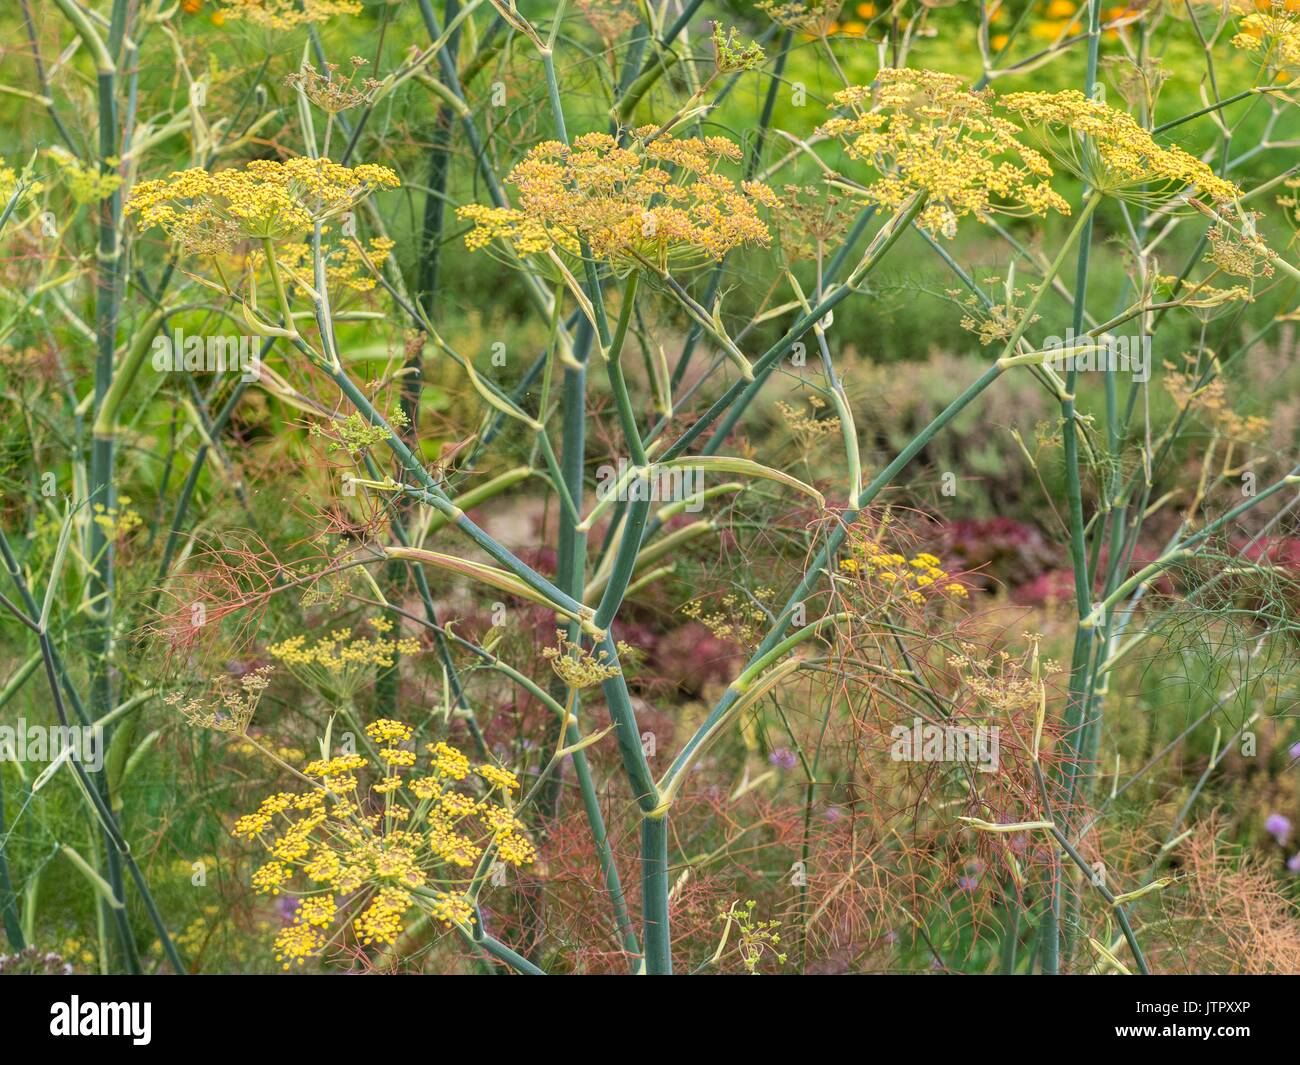 Foeniculum vulgare 'Purpureum', bronze fennel. Stock Photo